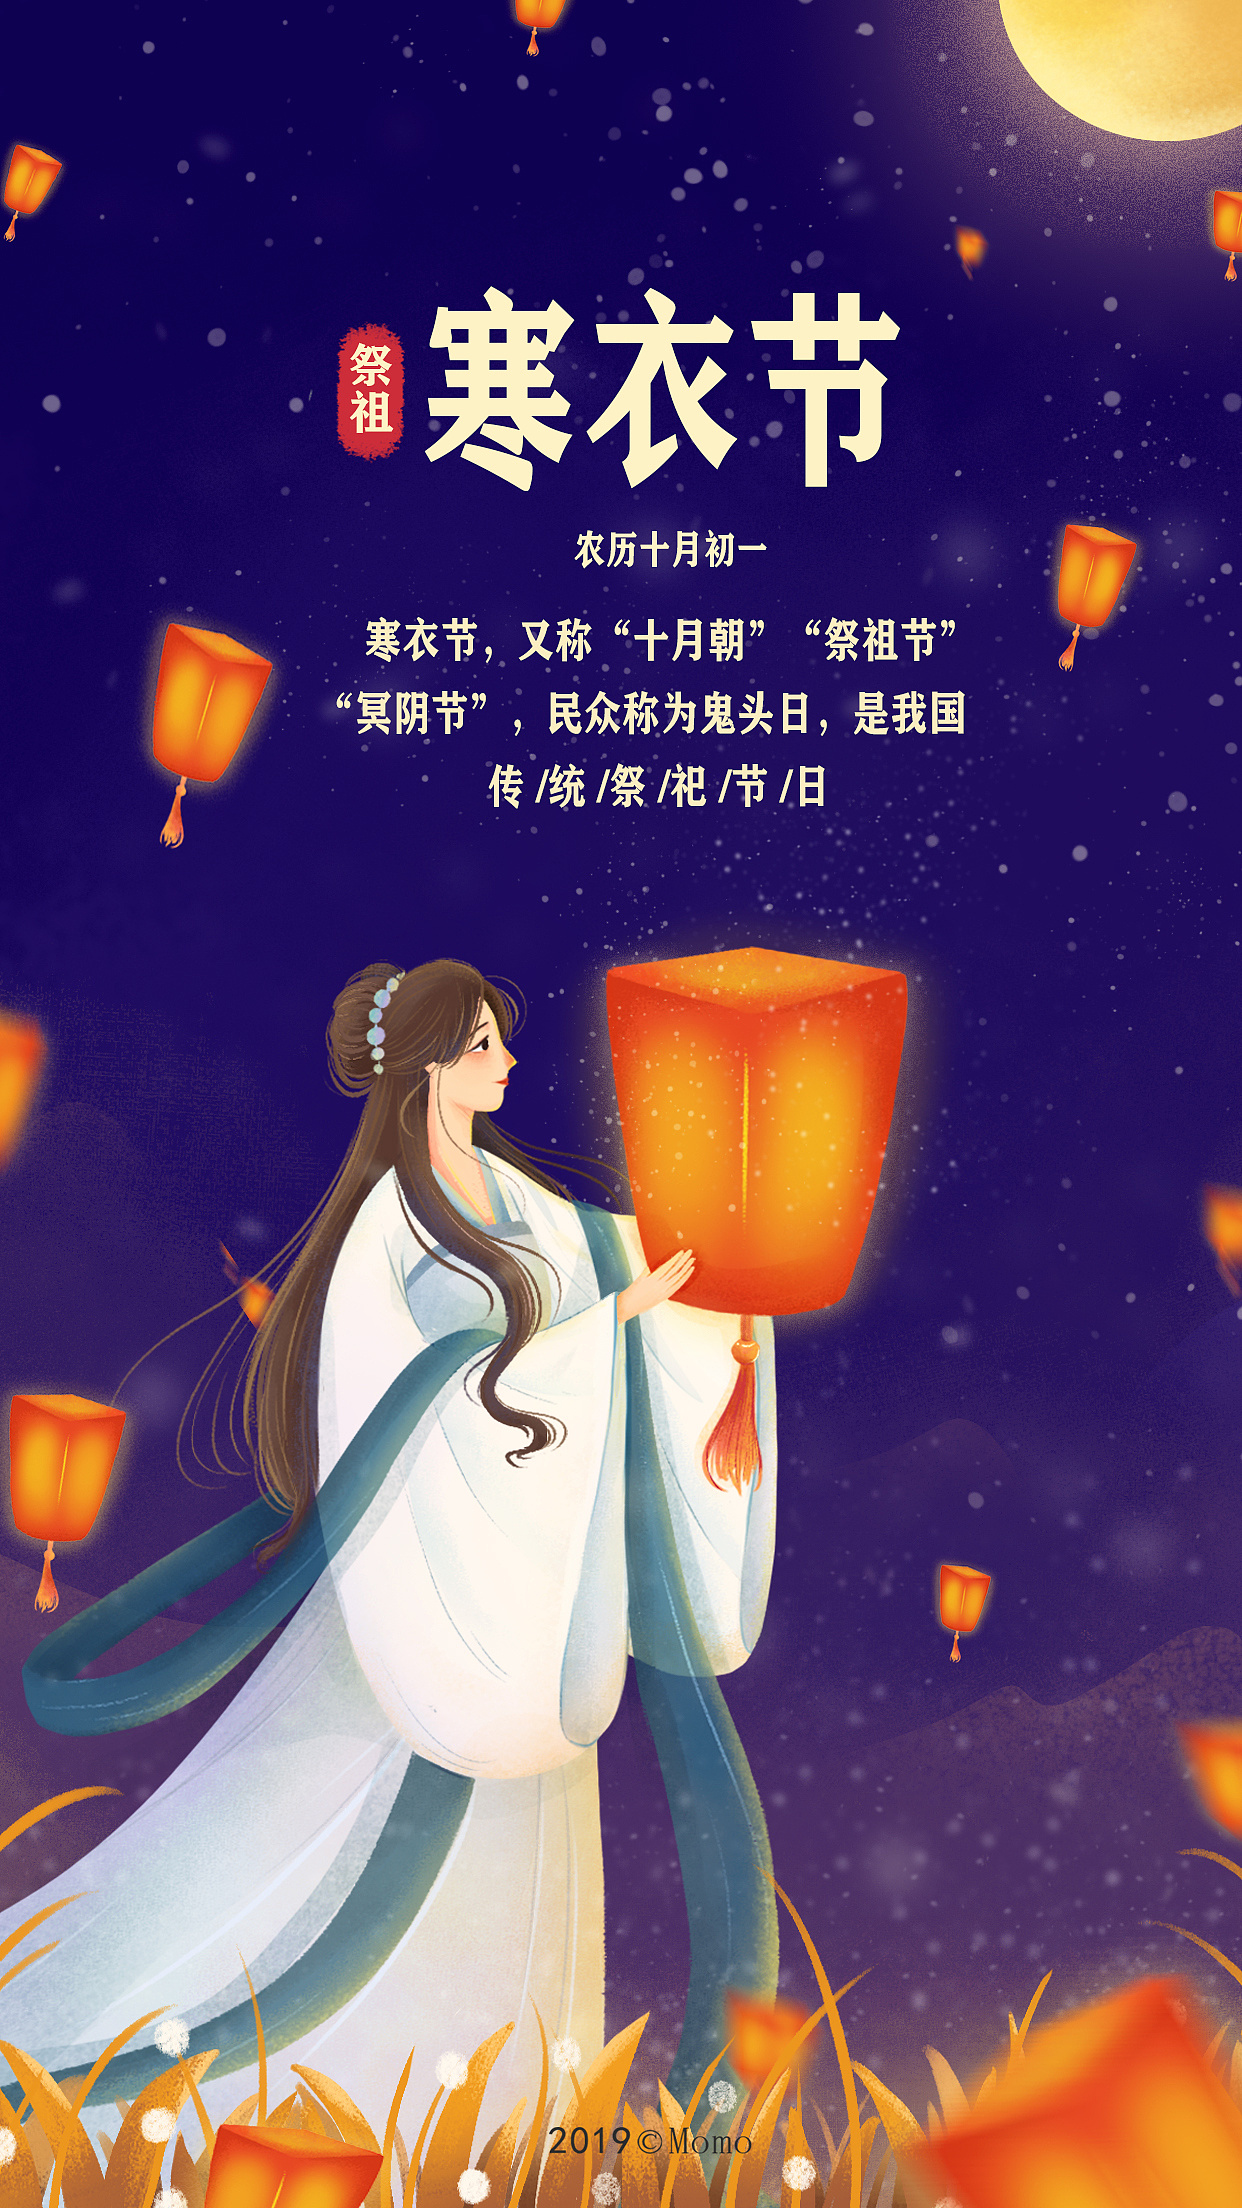 寒衣节 中国传统节日